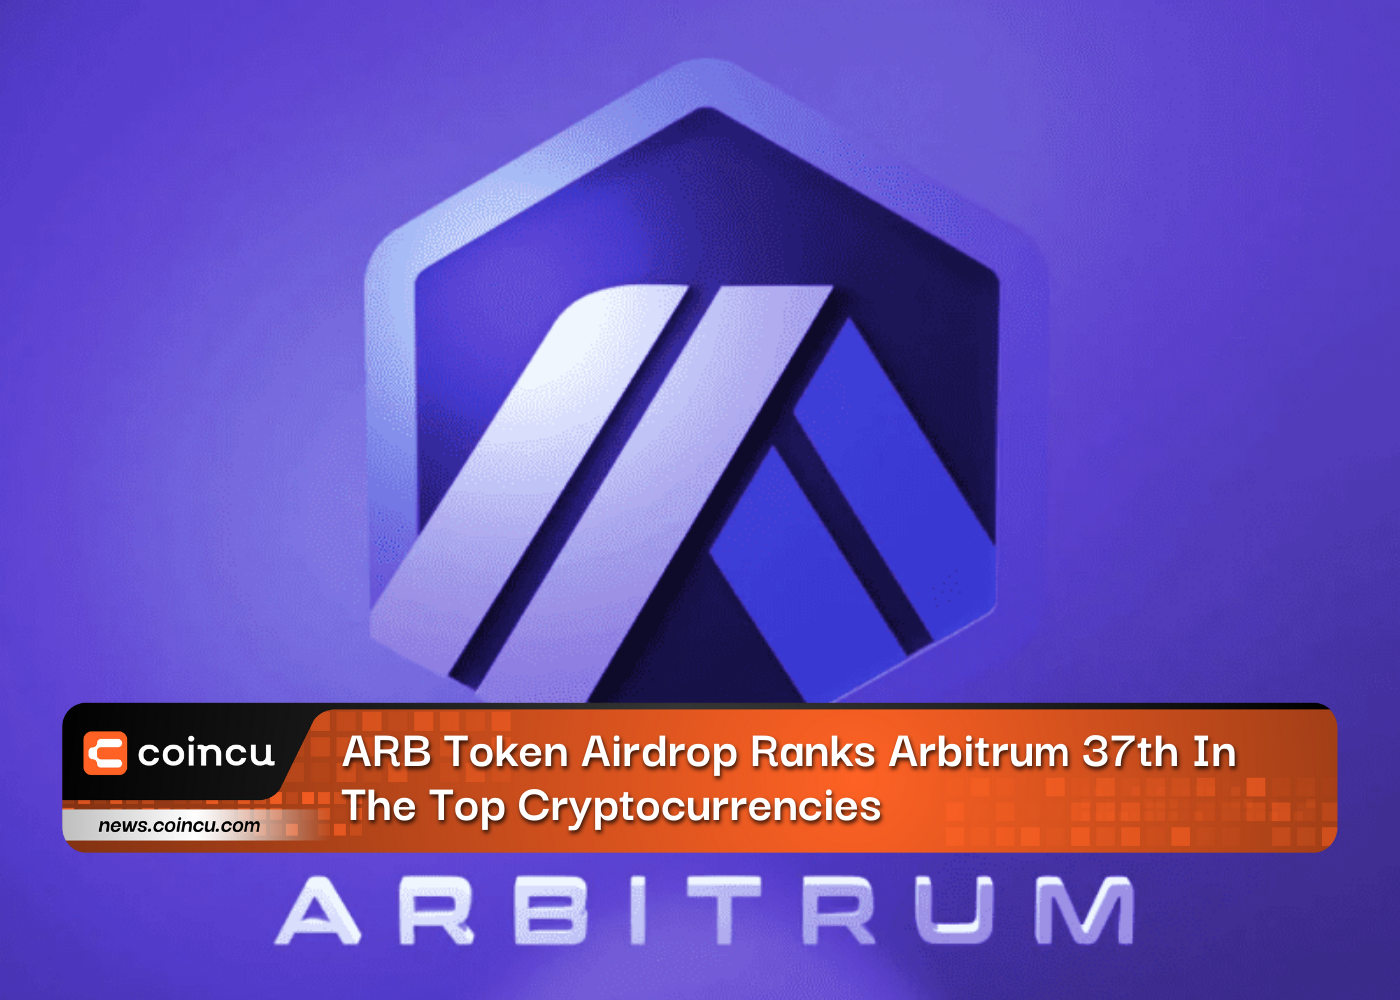 ARB Token Airdrop classifica o Arbitrum em 37º lugar entre as principais criptomoedas